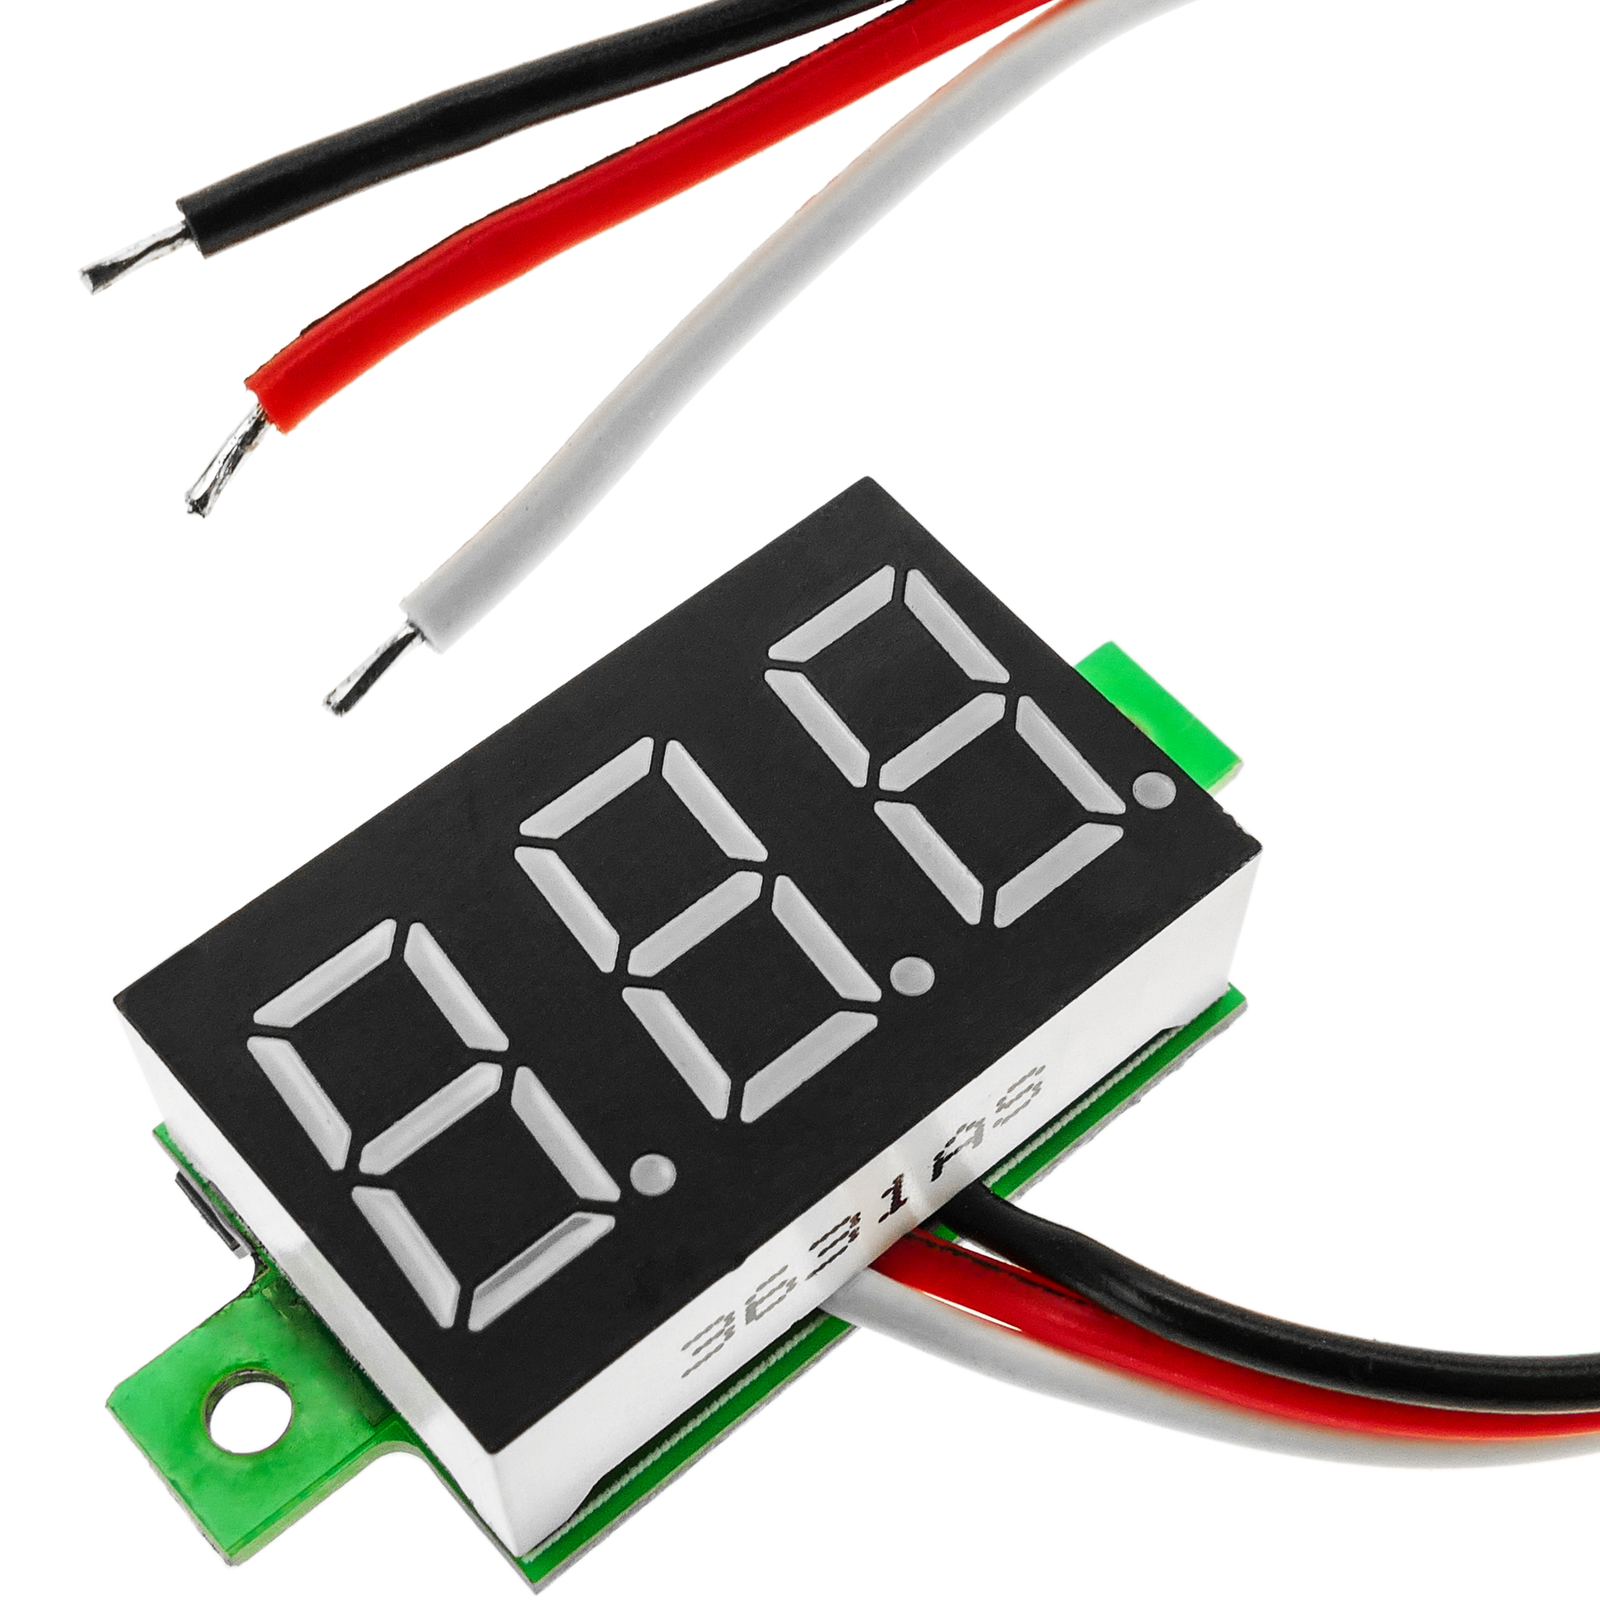 Affichage LCD à 3 chiffres double avec voltmètre 80-300VAC et ampèremètre  100-200A